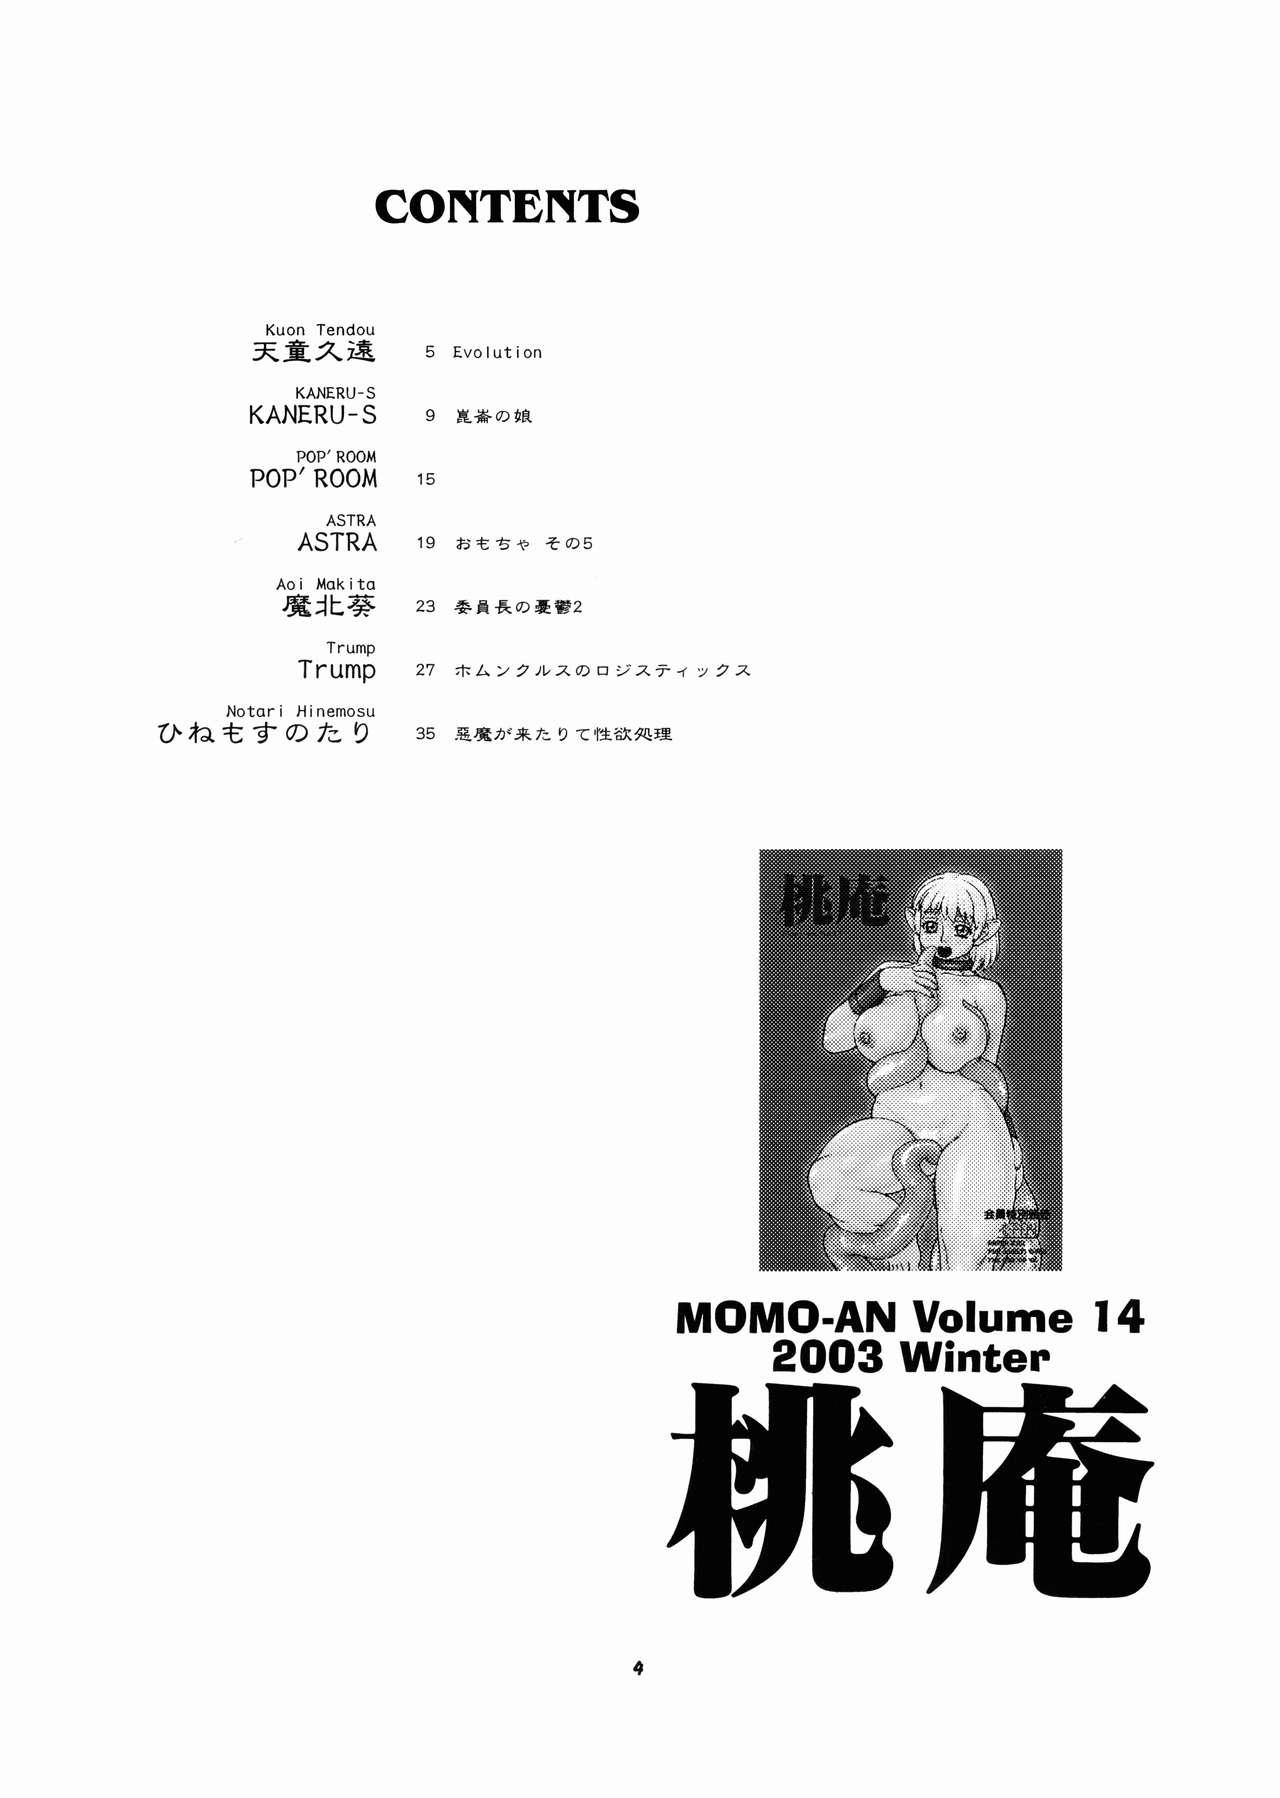 Momo-An Volume 14 4